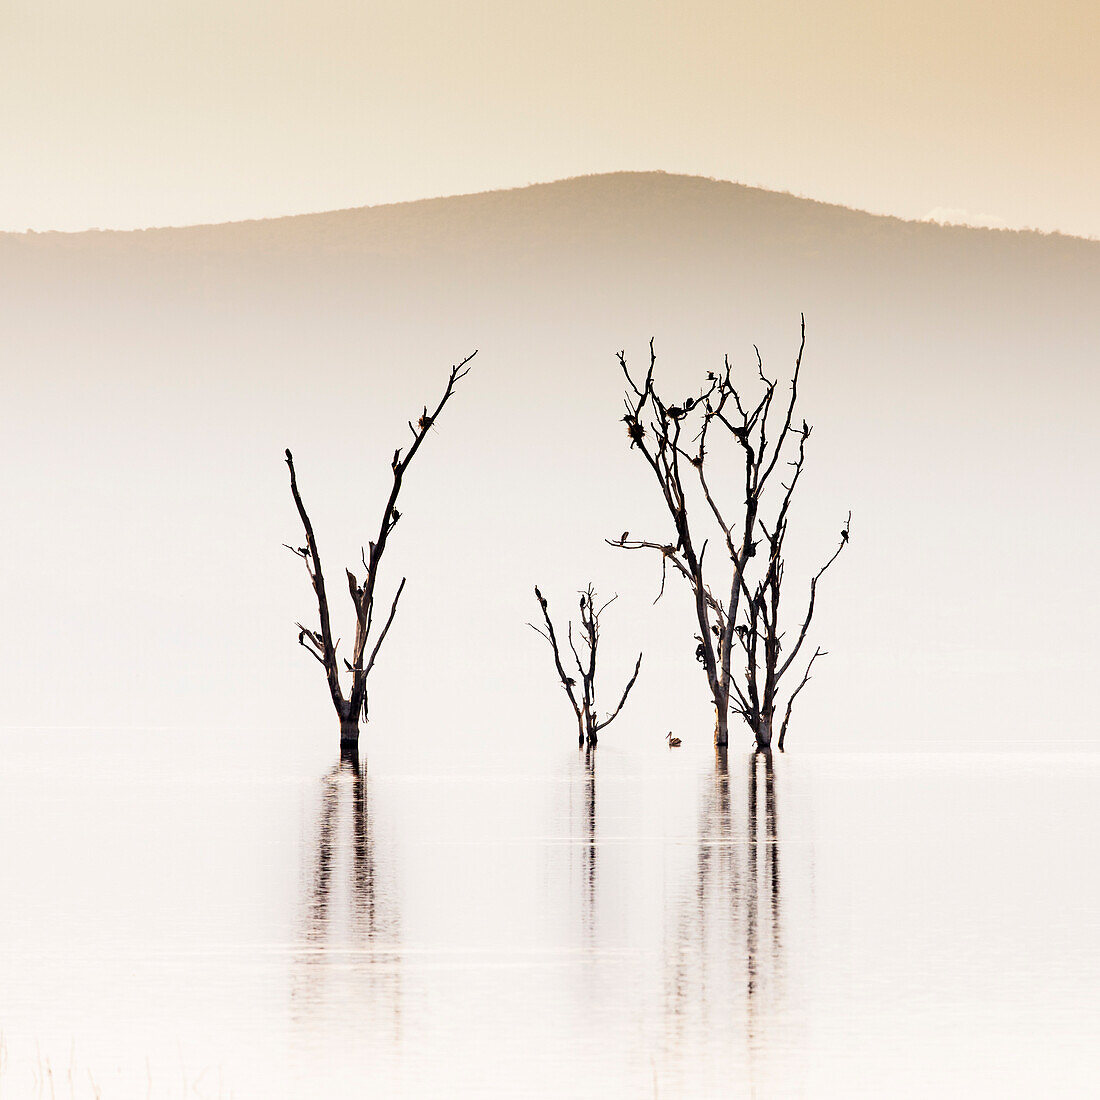 Lake Nakuru, Kenia, bei Sonnenaufgang. Das überflutete Baummuster, das 2014 durch den Anstieg der alkalischen Gewässer des Sees entstanden ist, wurde rasch von Wasservögeln besiedelt.